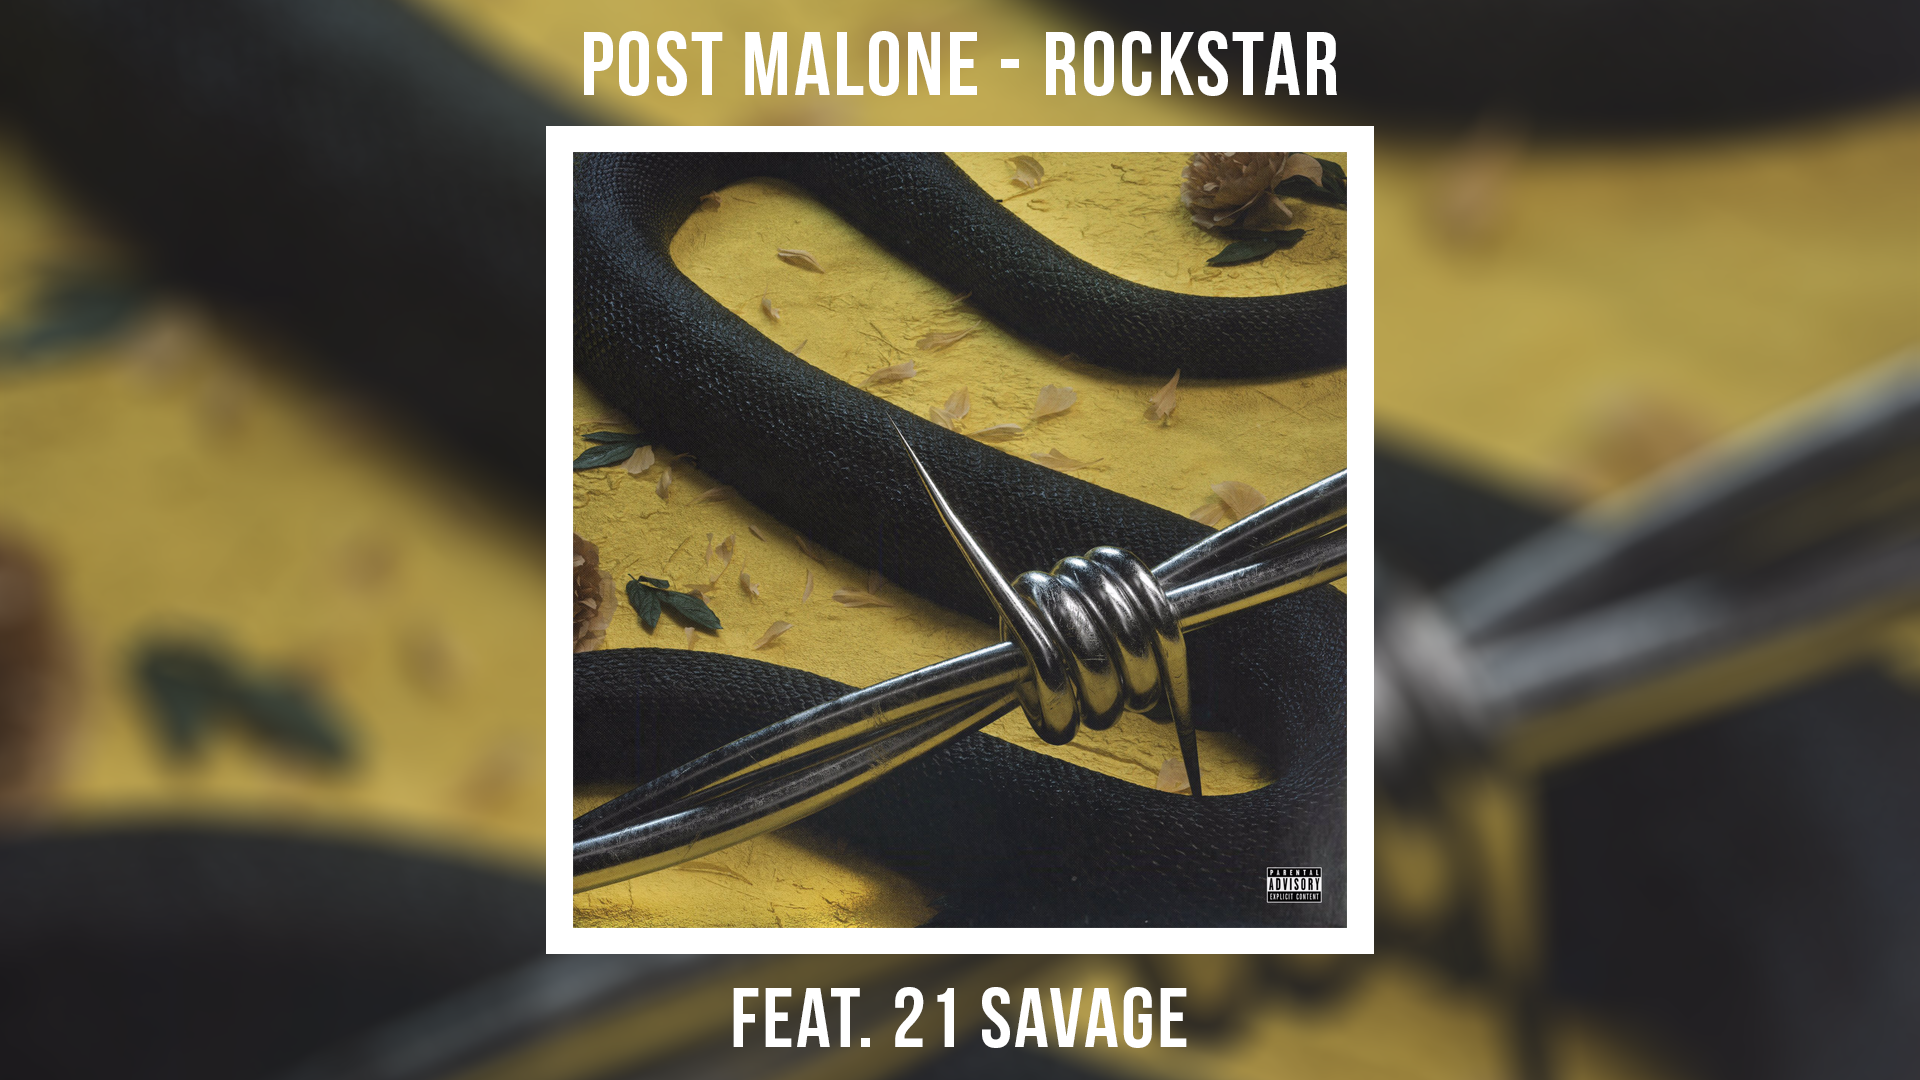 Post malone remix. Post Malone 21 Savage Rockstar. Post Malone Rockstar обложка. Rockstar Post Malone 21 Savage обложка. Post Malone Rockstar ft. 21 Savage обложка.